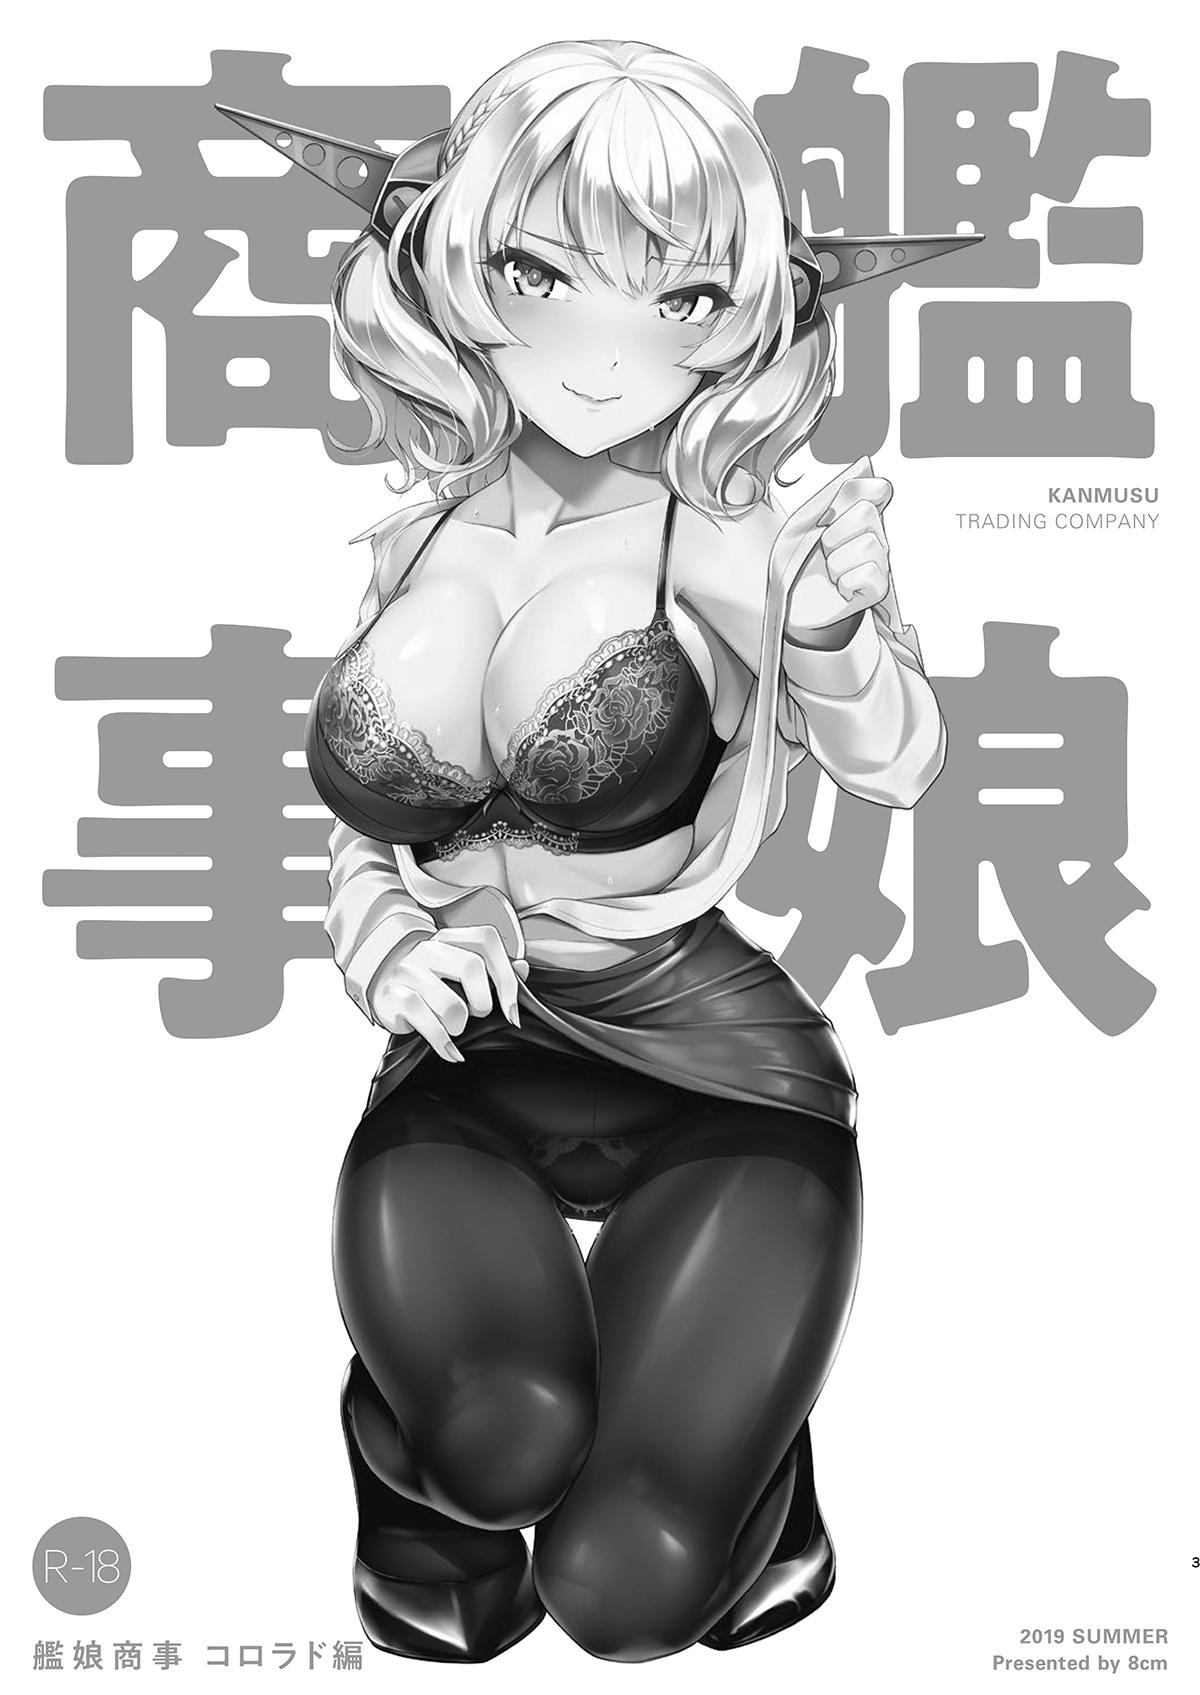 Kanmusu Shouji Colorado Hen | Ship Girl Business - Colorado Edition 1